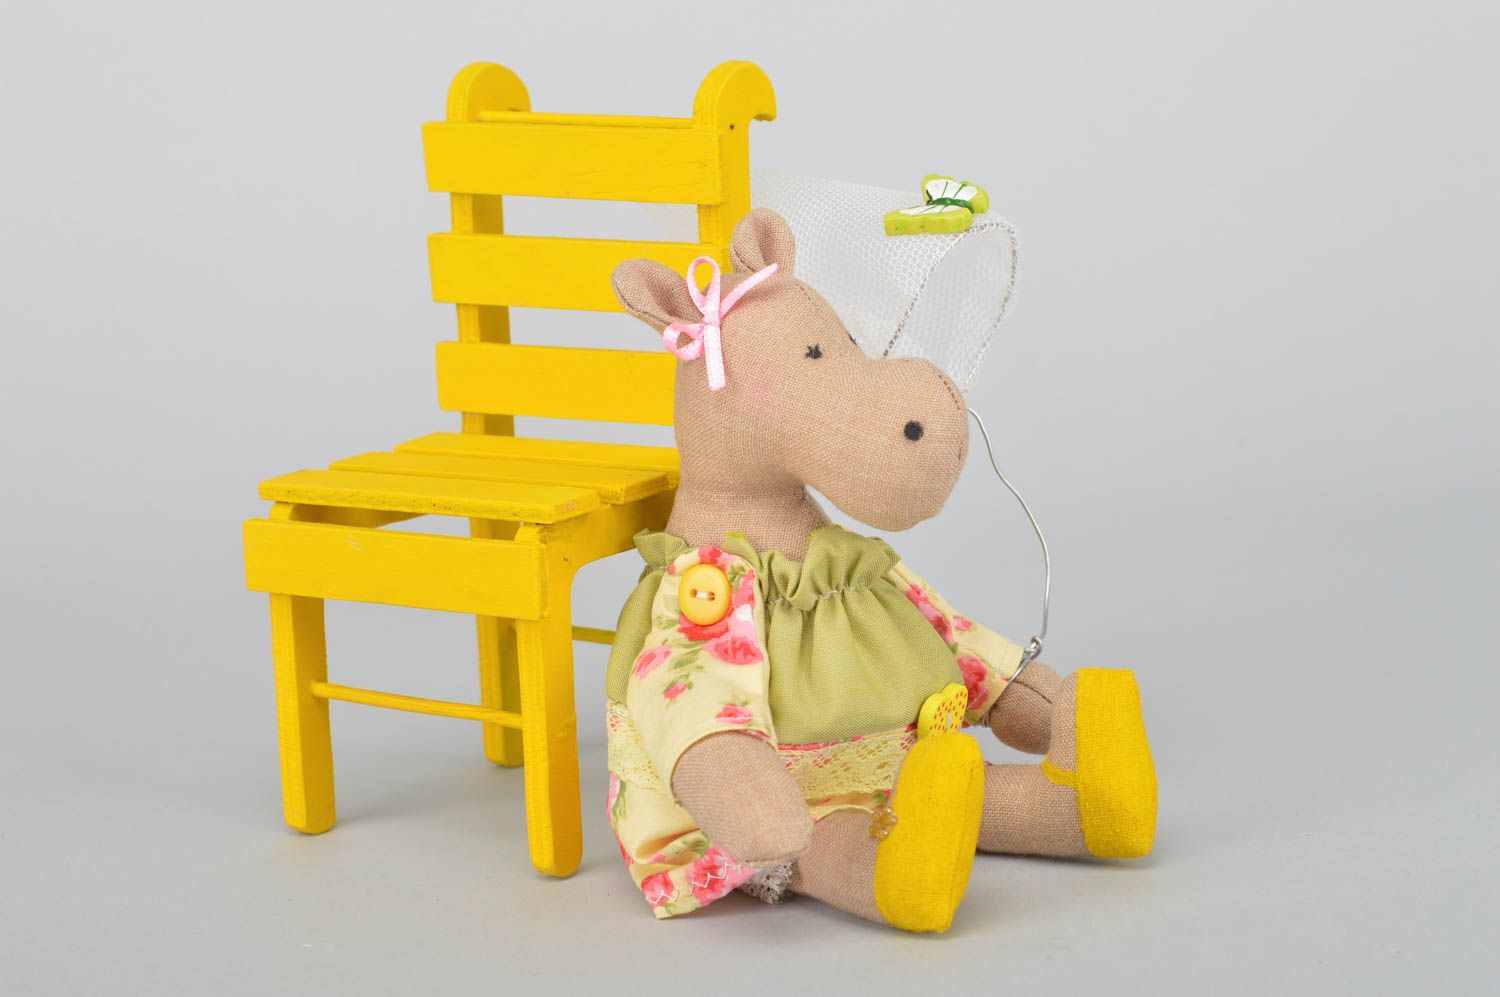 Мягкая игрушка ручной работы из хлопка для декора дома Бегемотик на желтом стуле фото 3